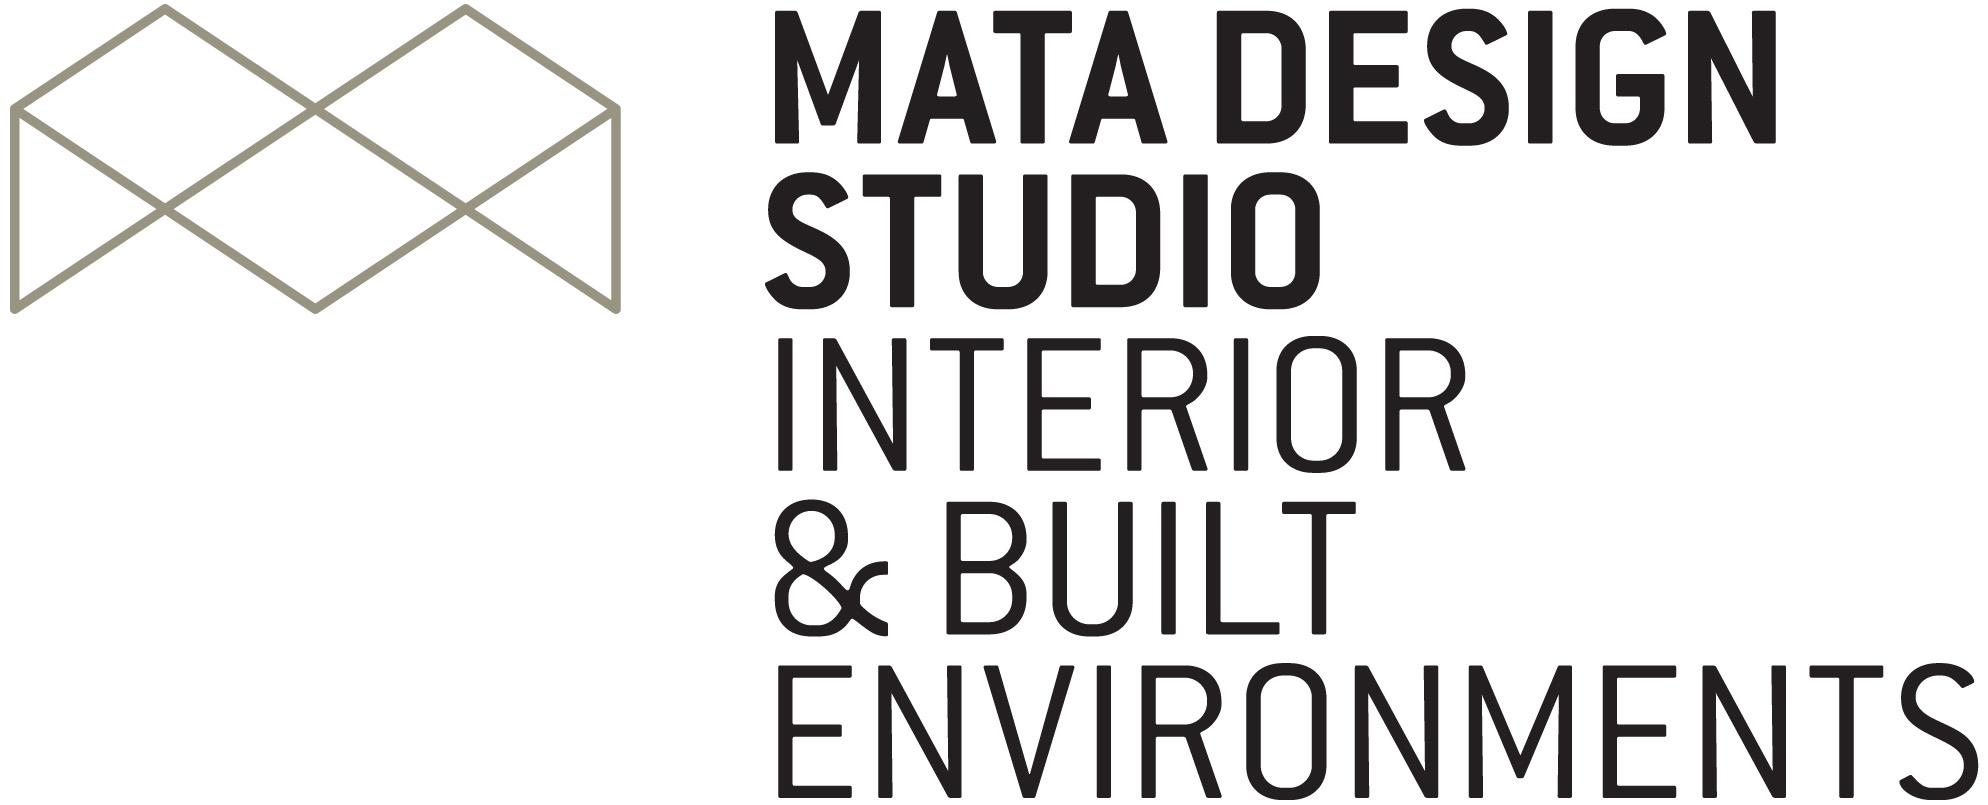 Mata Design Studio